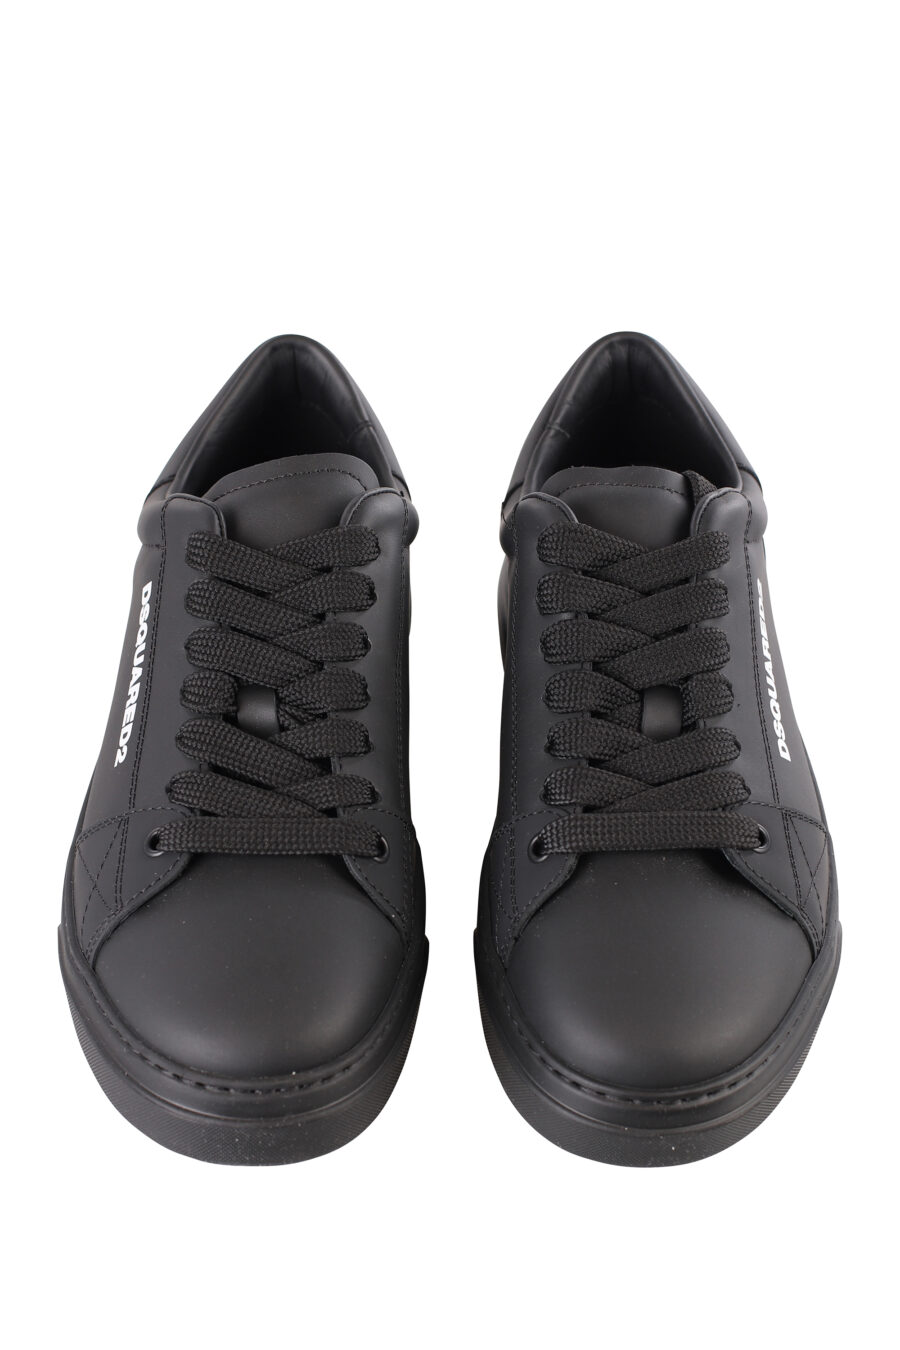 Zapatillas negras con logo blanco pequeño y suela negra - IMG 1133